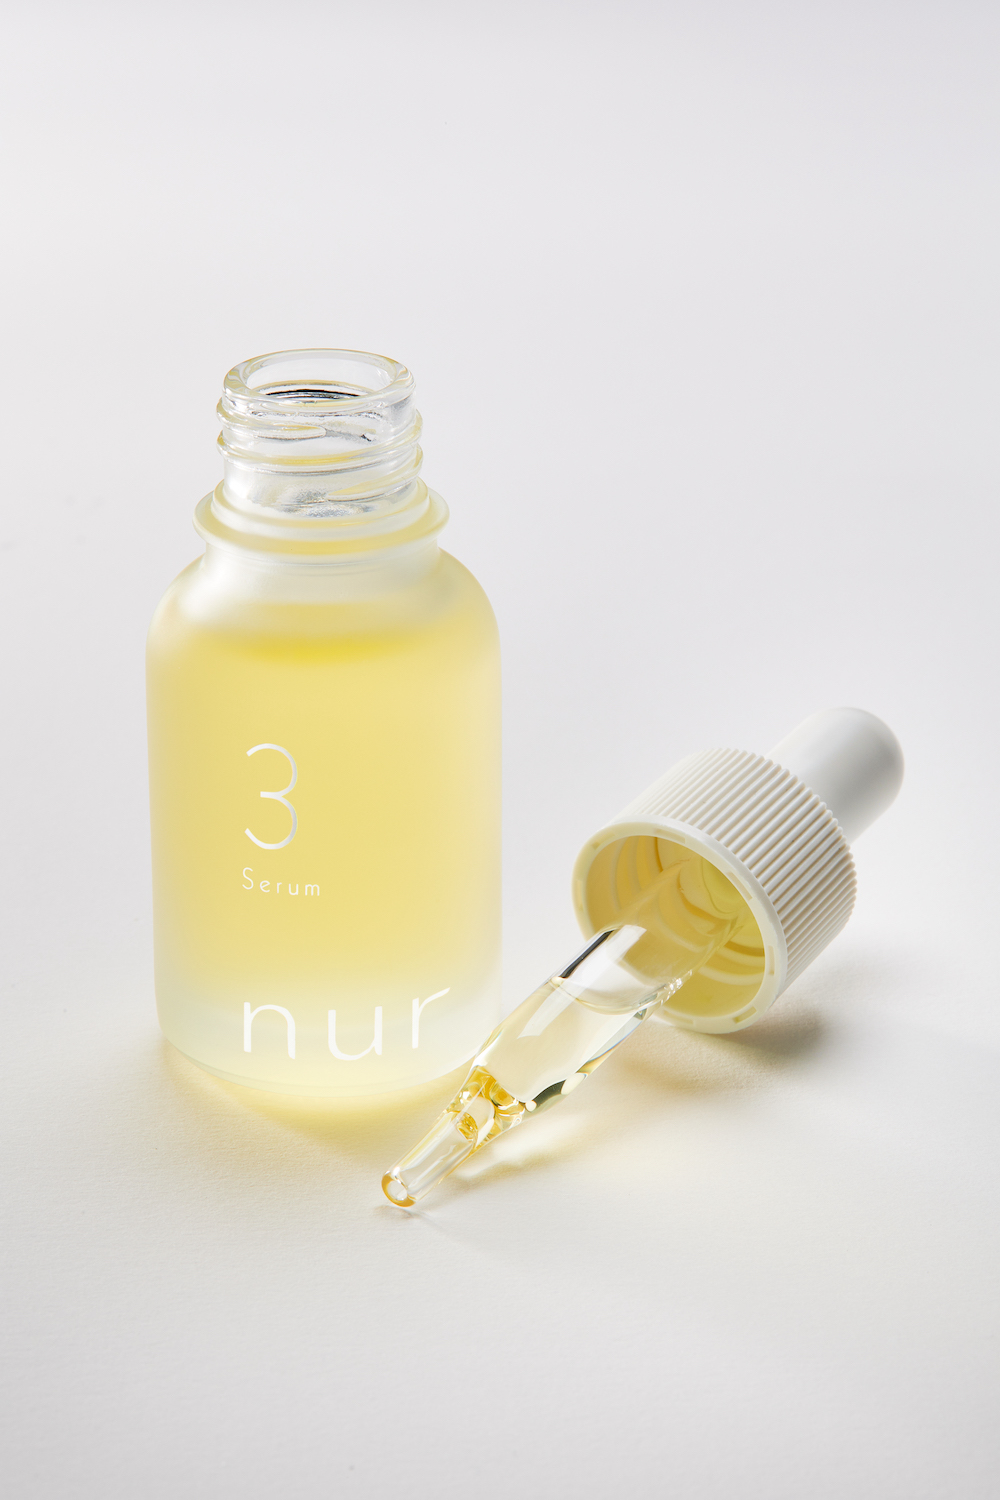 ライフケアブランド『nur(ヌーア)』から発売の美容液初回購入 